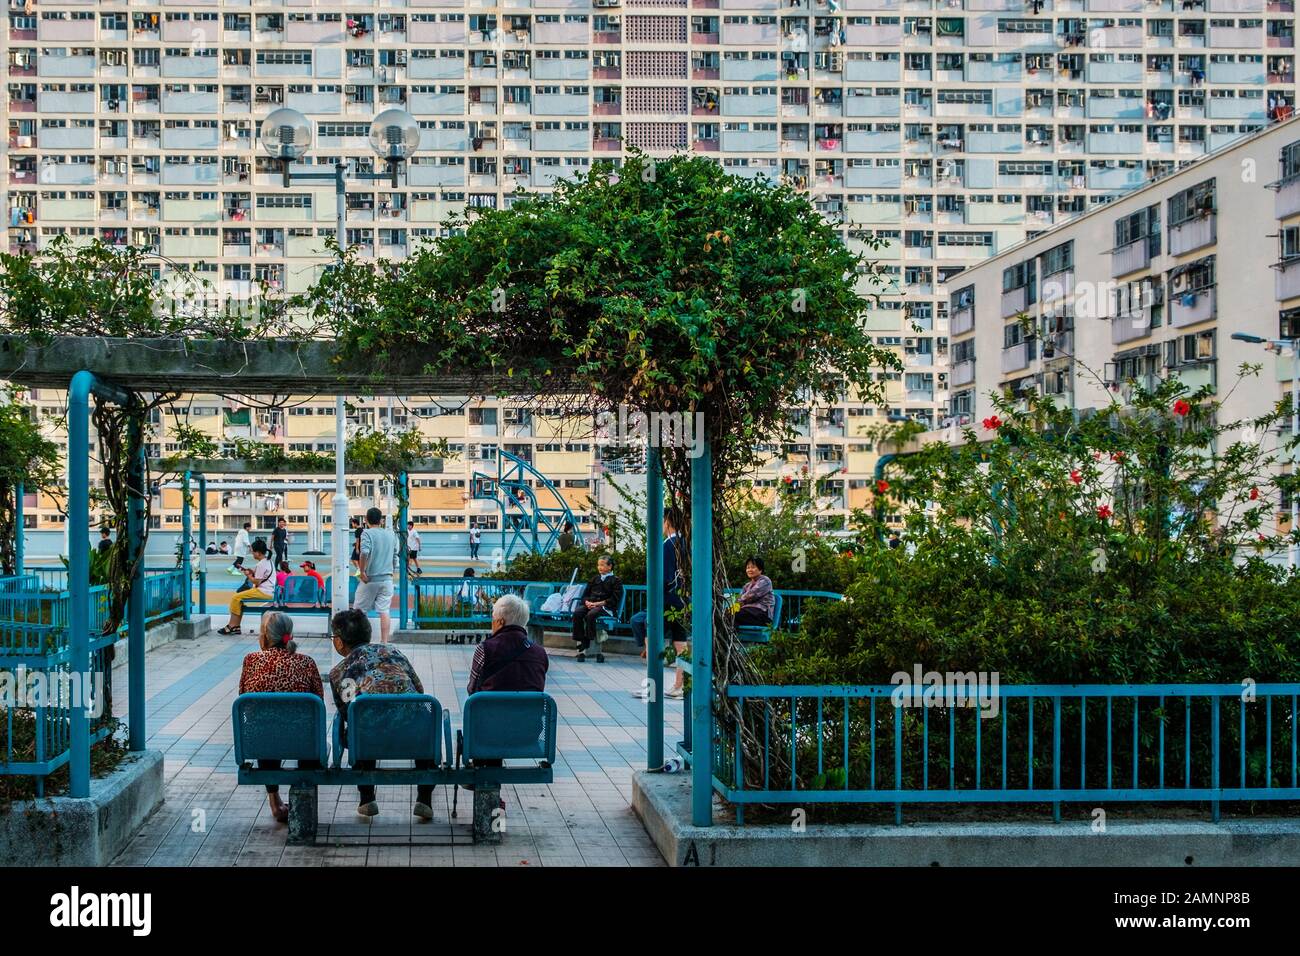 Hongkong, Chine, novembre 2019 : personnes âgées, femmes assises sur un banc dans un parc public Banque D'Images